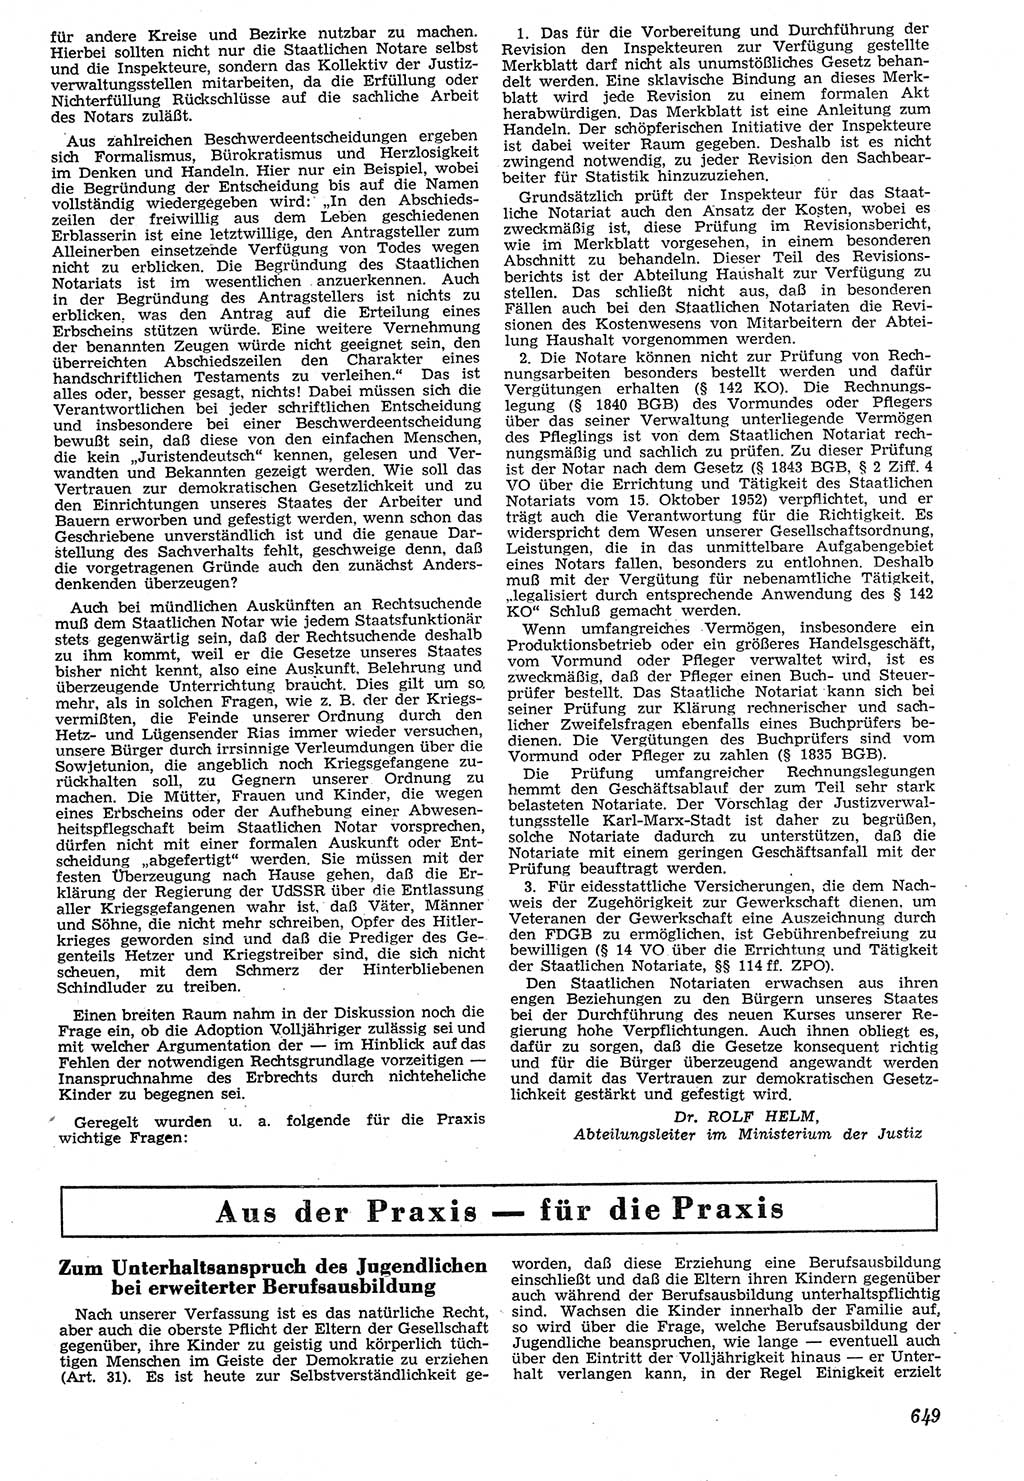 Neue Justiz (NJ), Zeitschrift für Recht und Rechtswissenschaft [Deutsche Demokratische Republik (DDR)], 7. Jahrgang 1953, Seite 649 (NJ DDR 1953, S. 649)